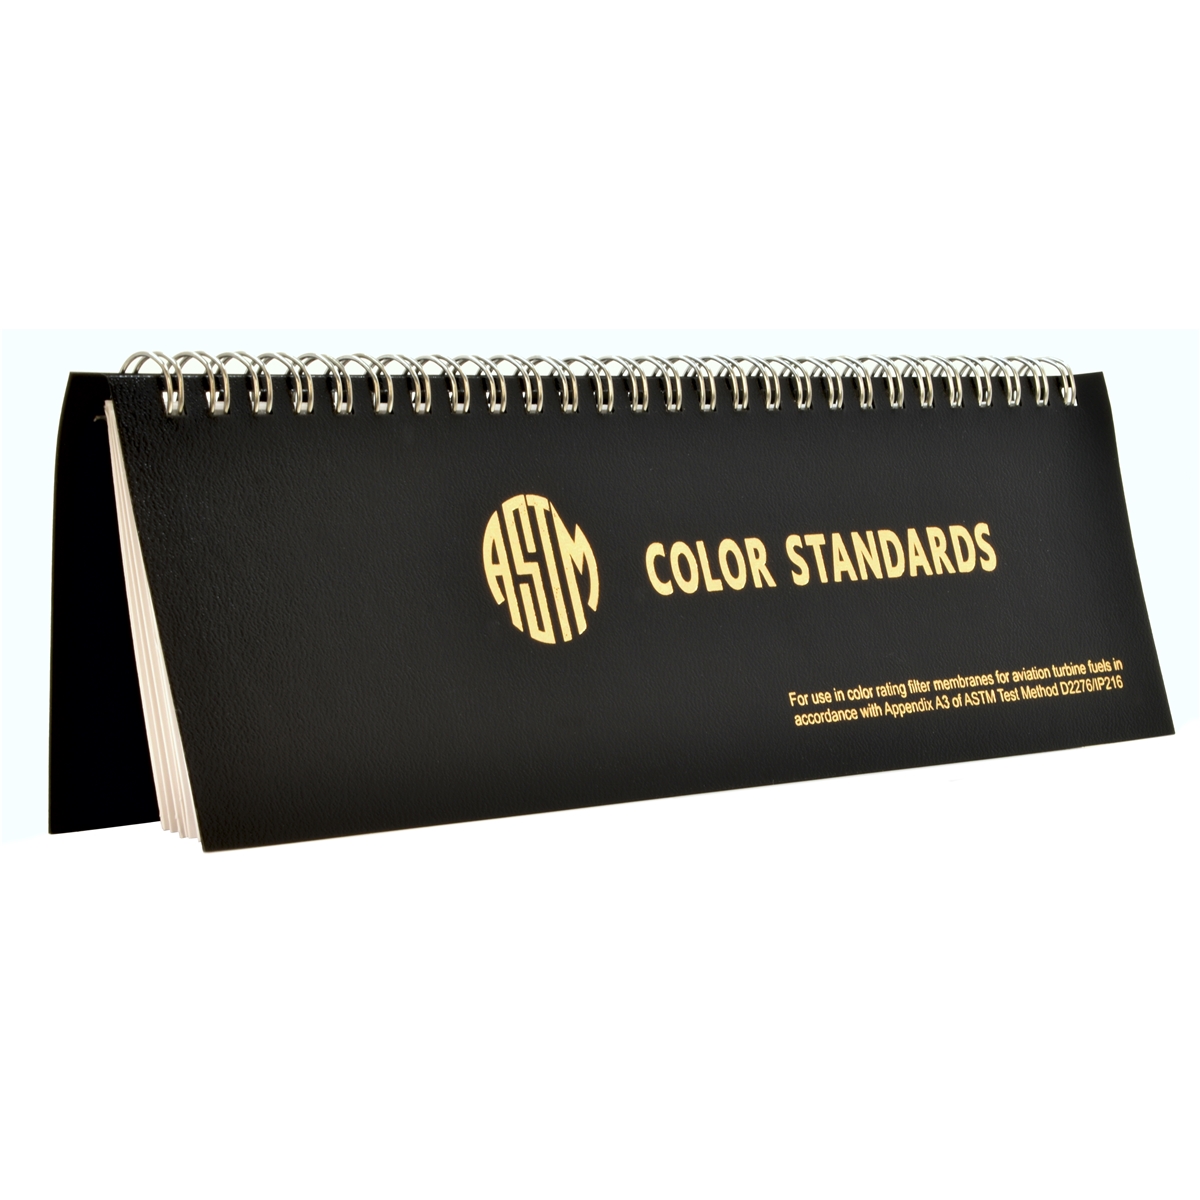 ASTM Color Rating Book (GTP-1074-1)- Książeczka z oceną kolorów